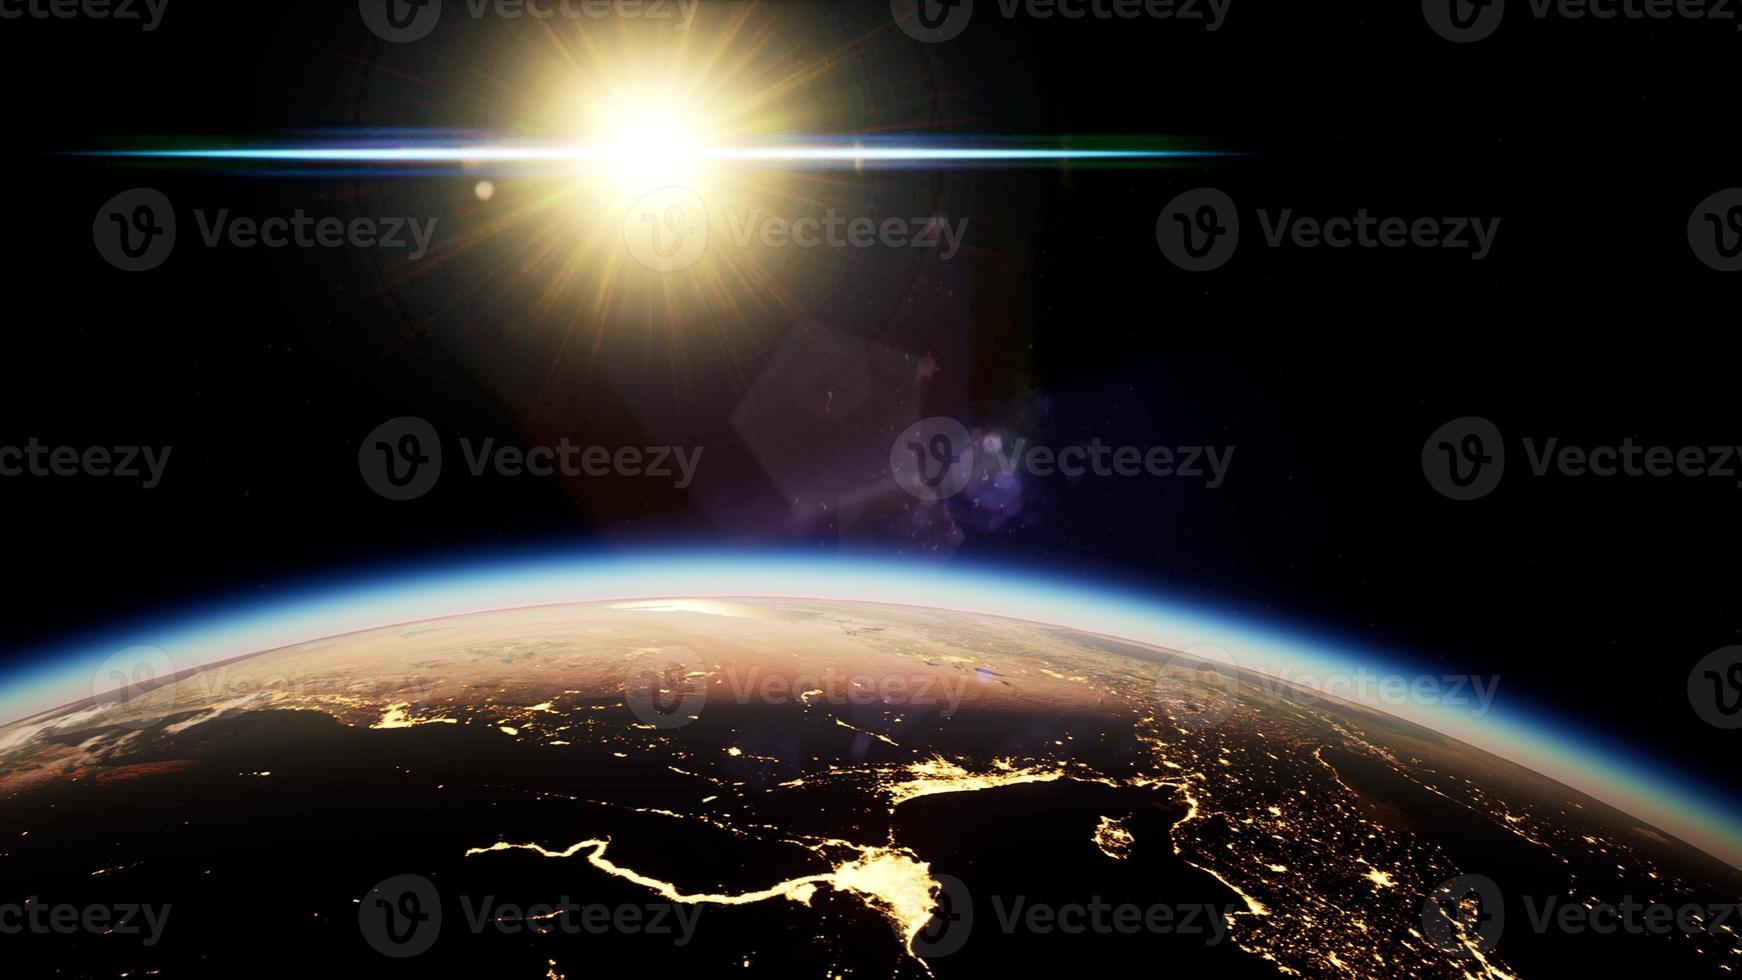 rymden, solen och planeten jorden på natten foto